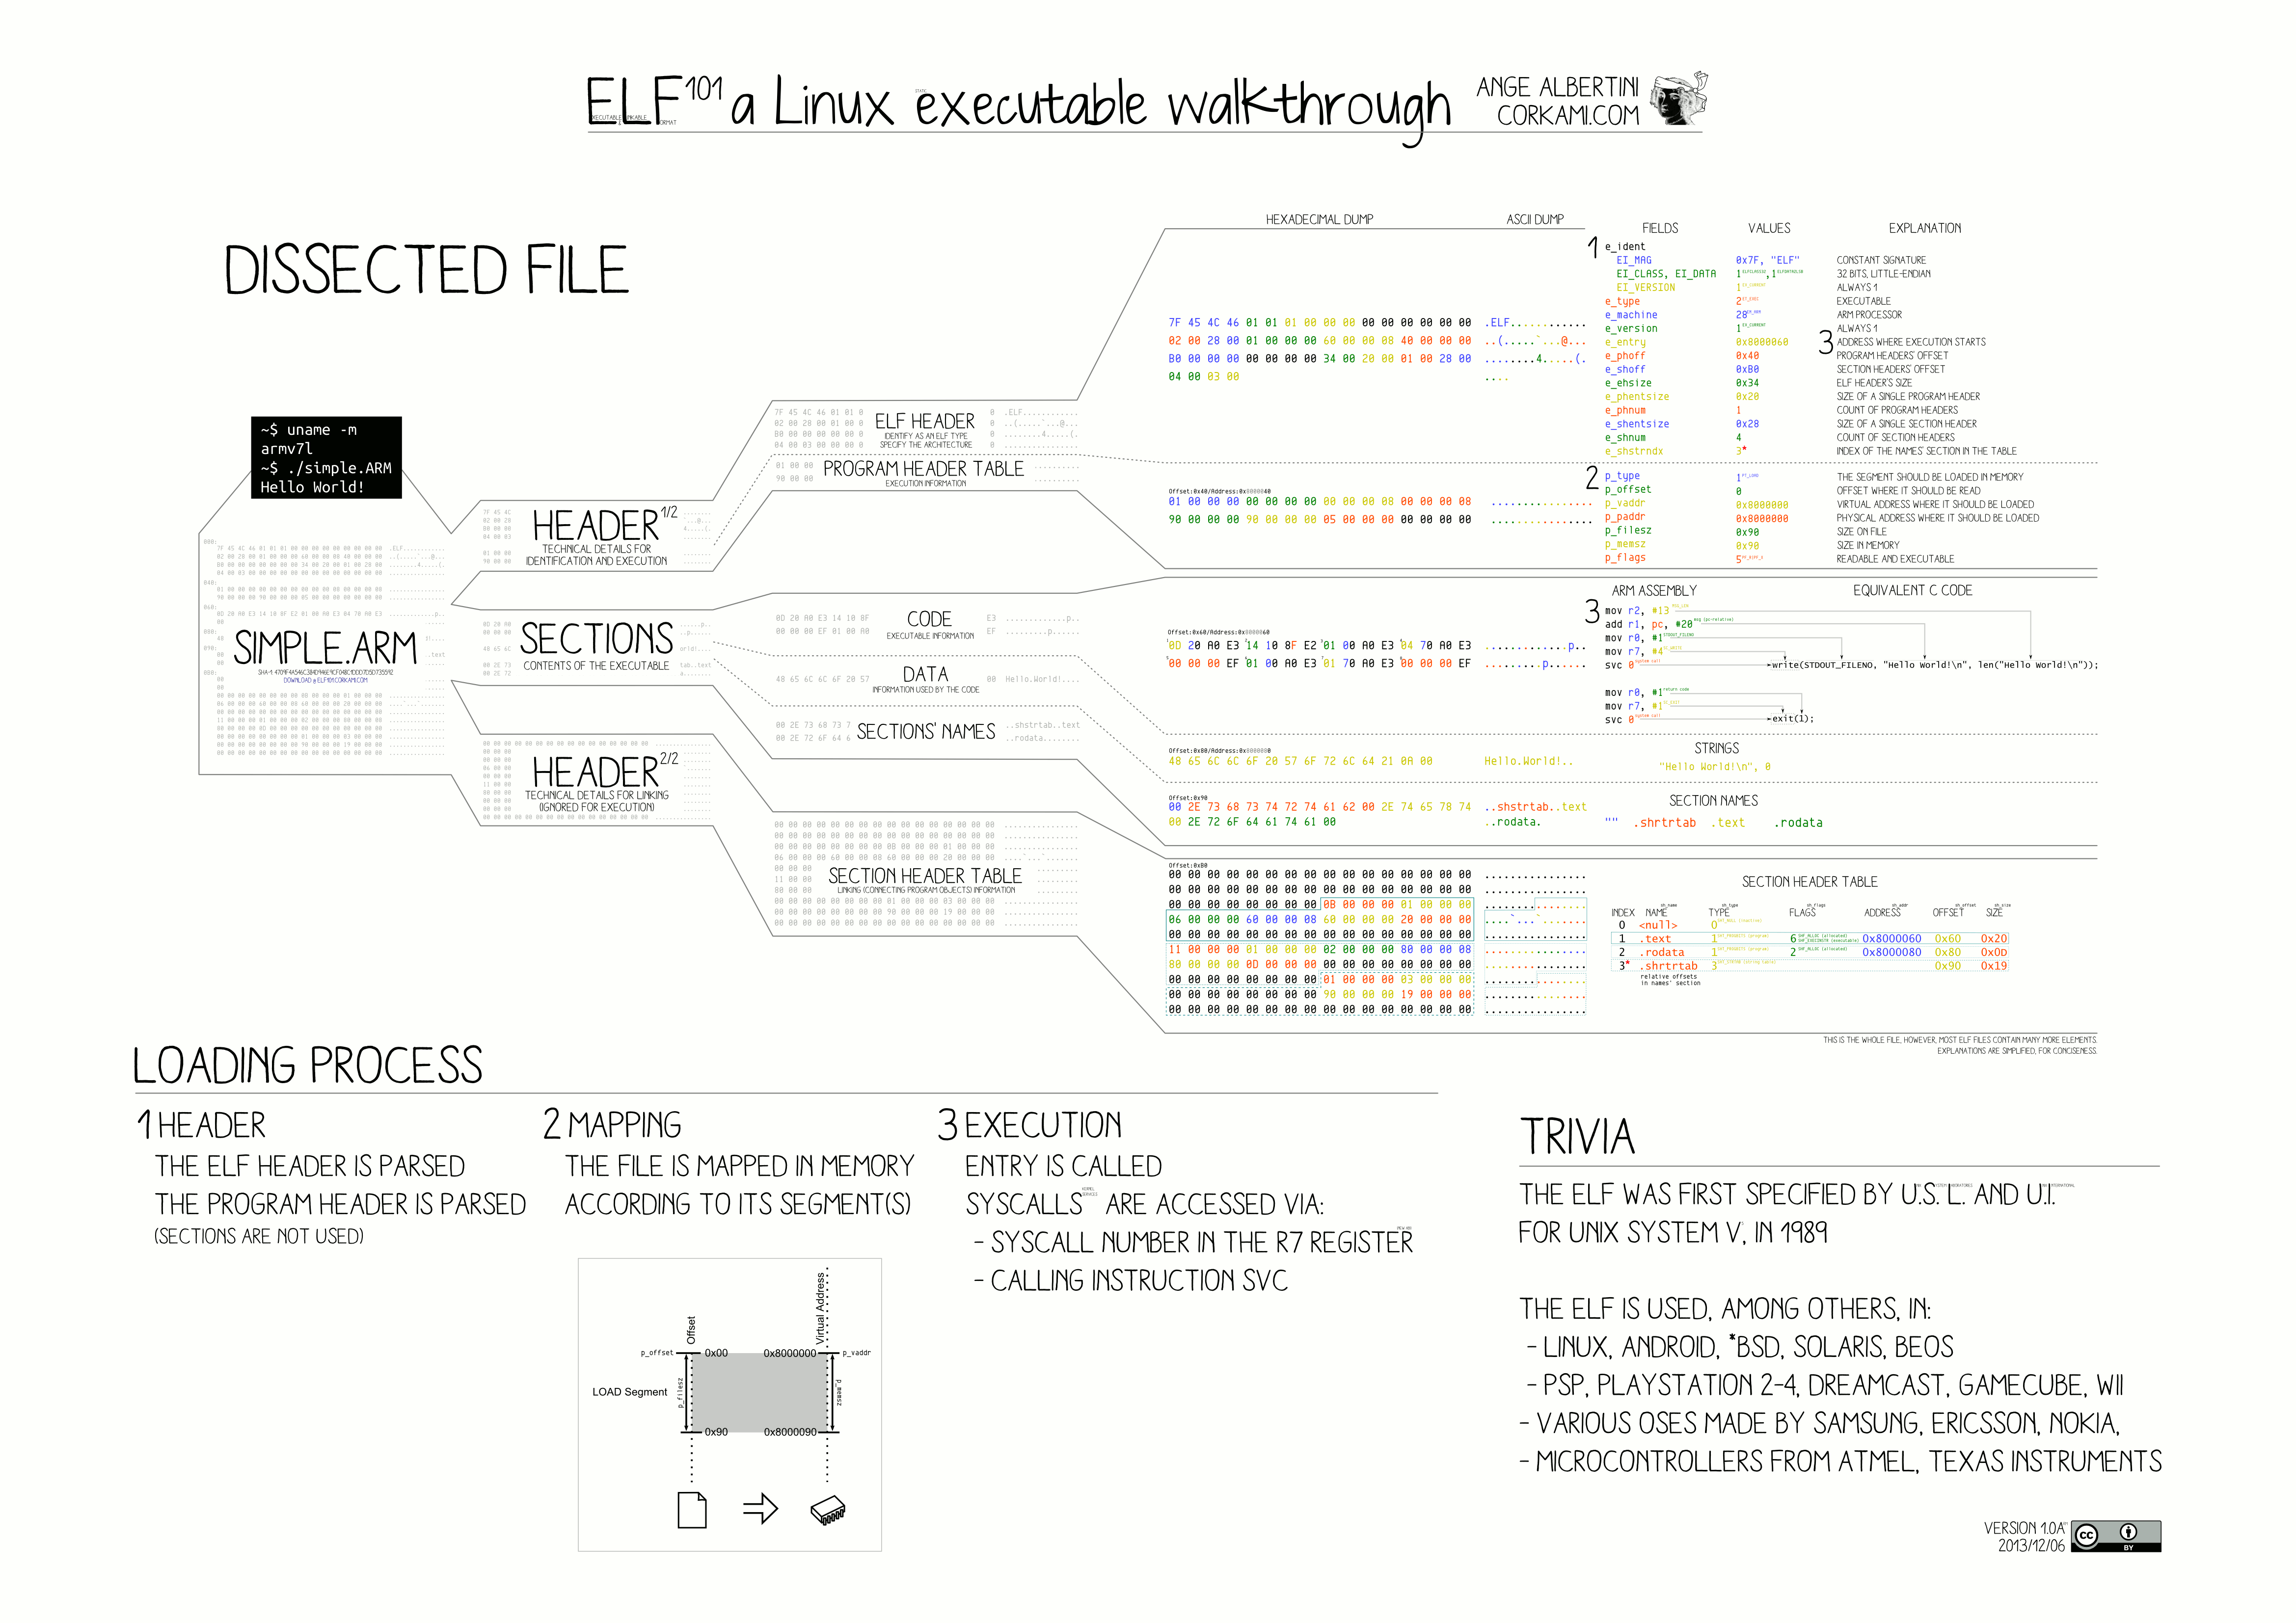 Схема исполняемого и связываемого форматов ELF, автор Анж Альбертини